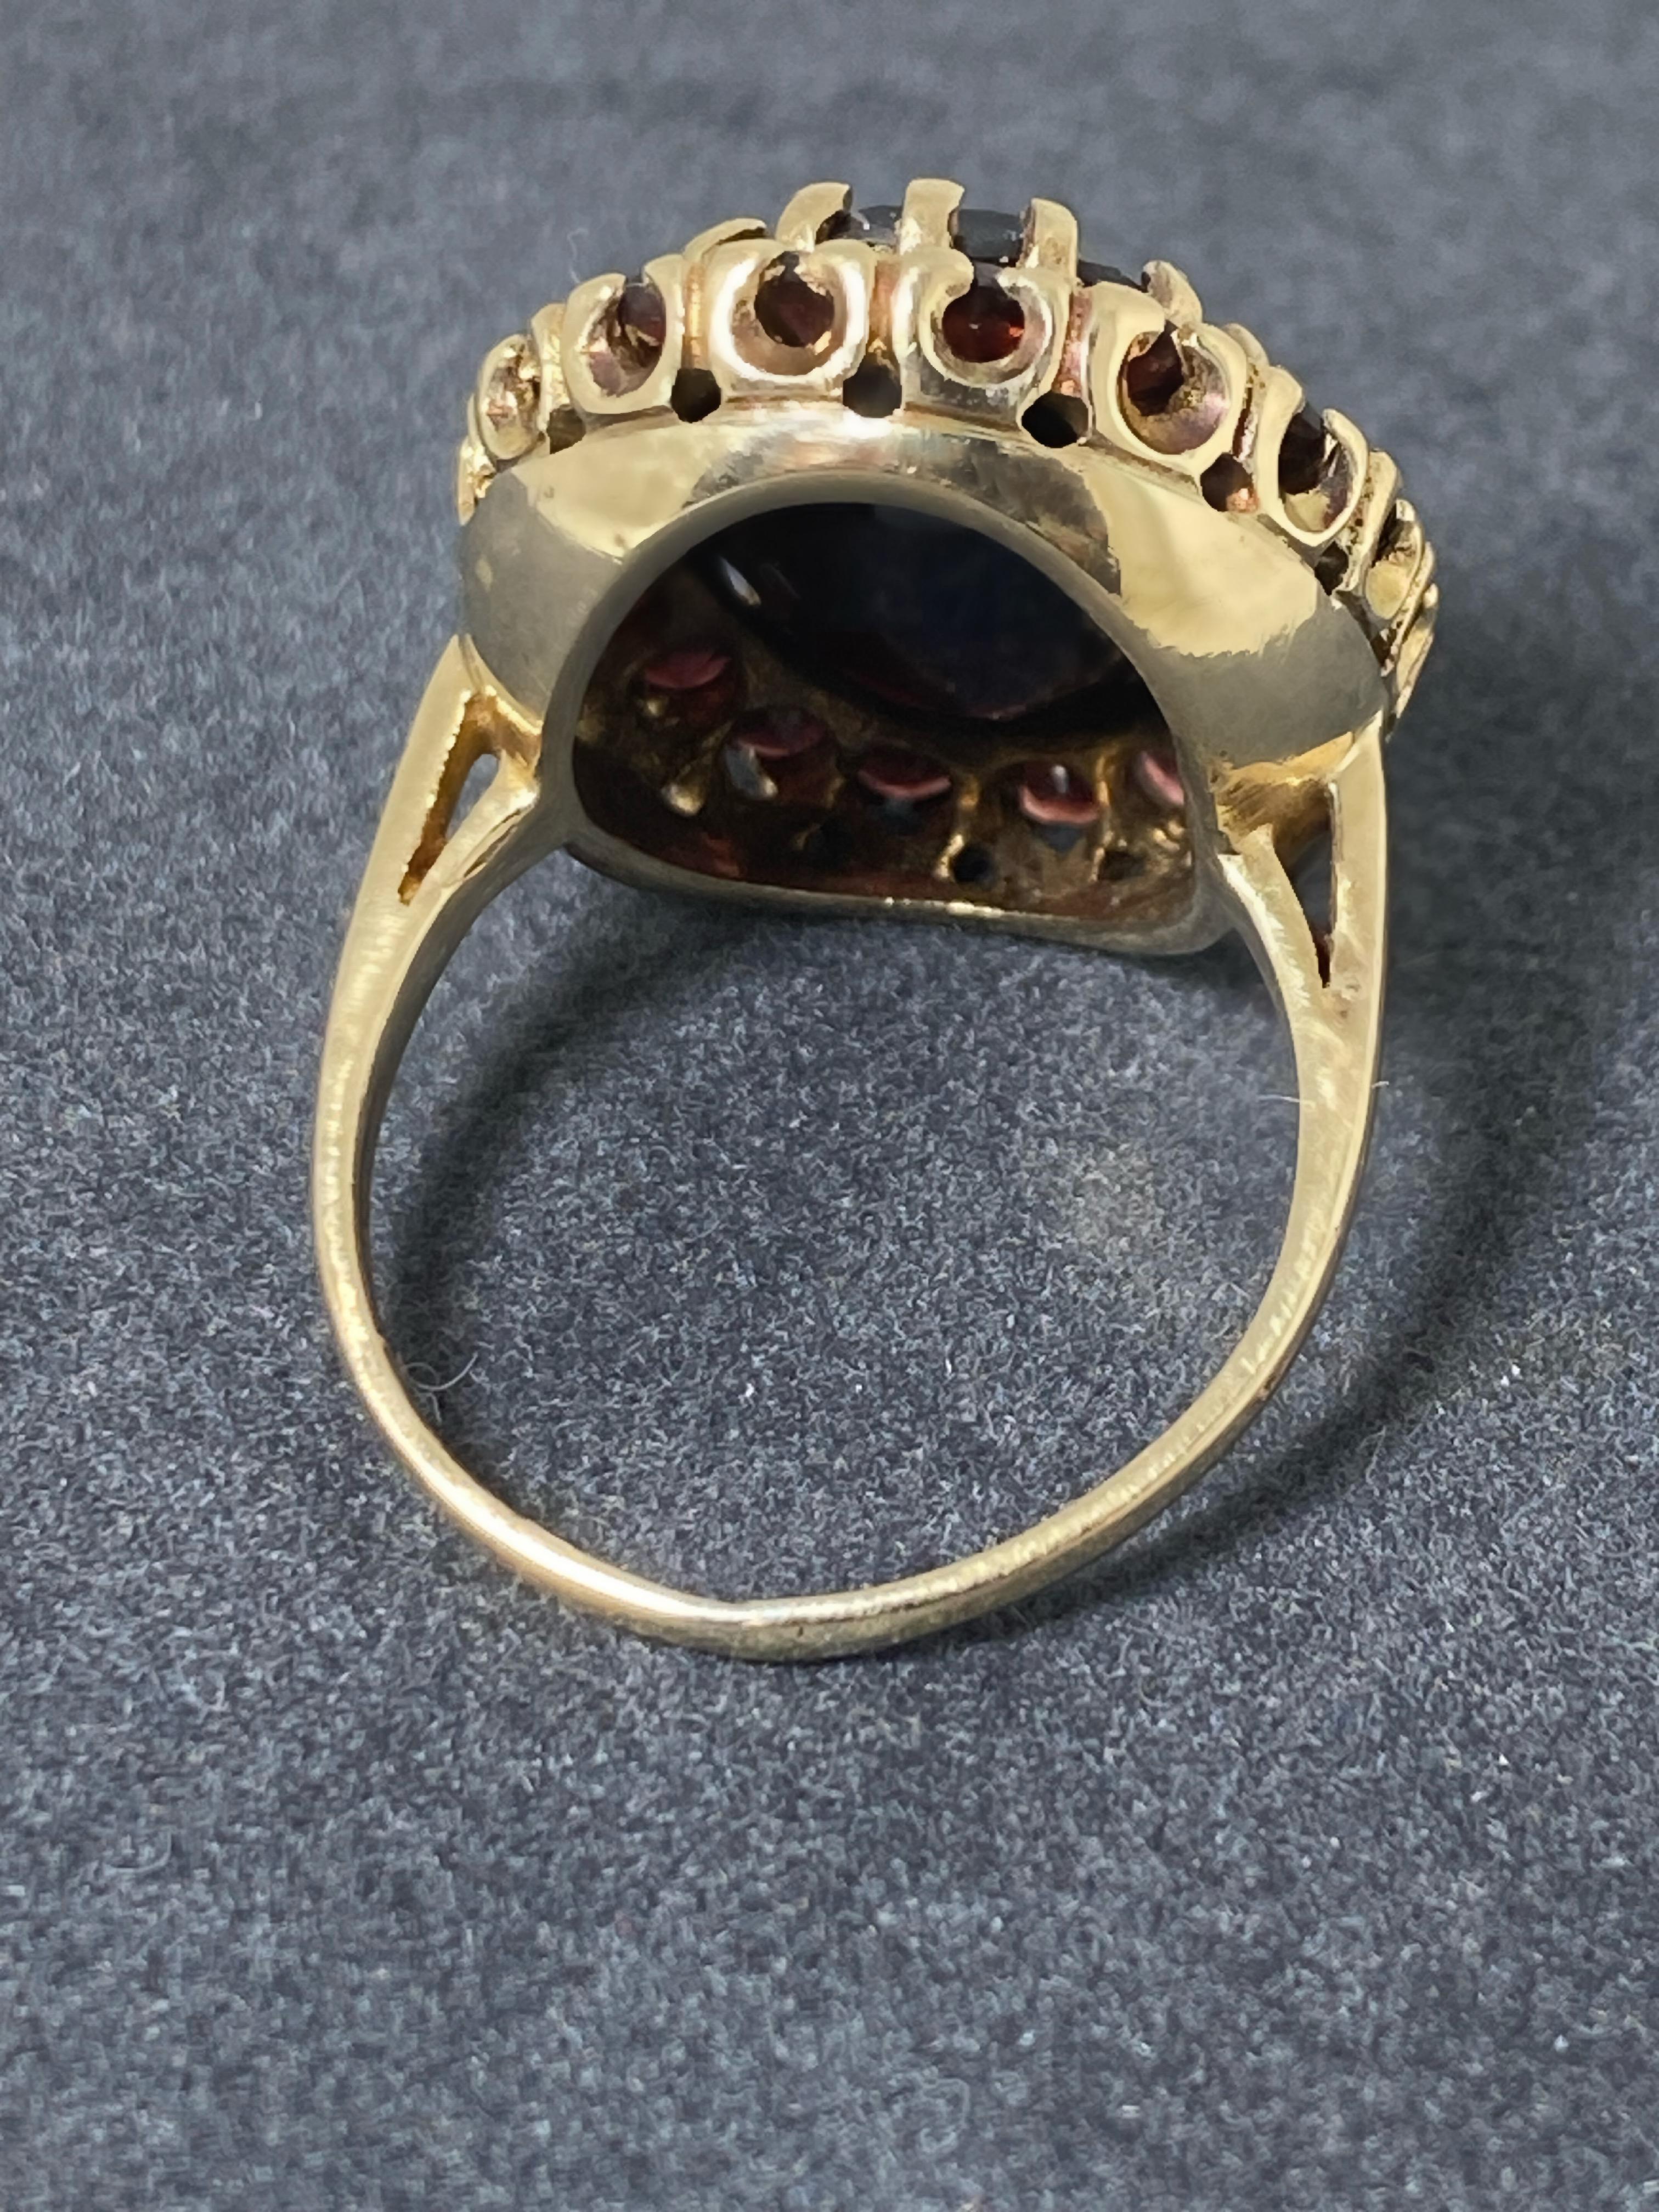 Oval Cut Antique Edwardian 13.50ct Garnet Ring in 9K Yellow Gold, English Hallmarks, G&TJ